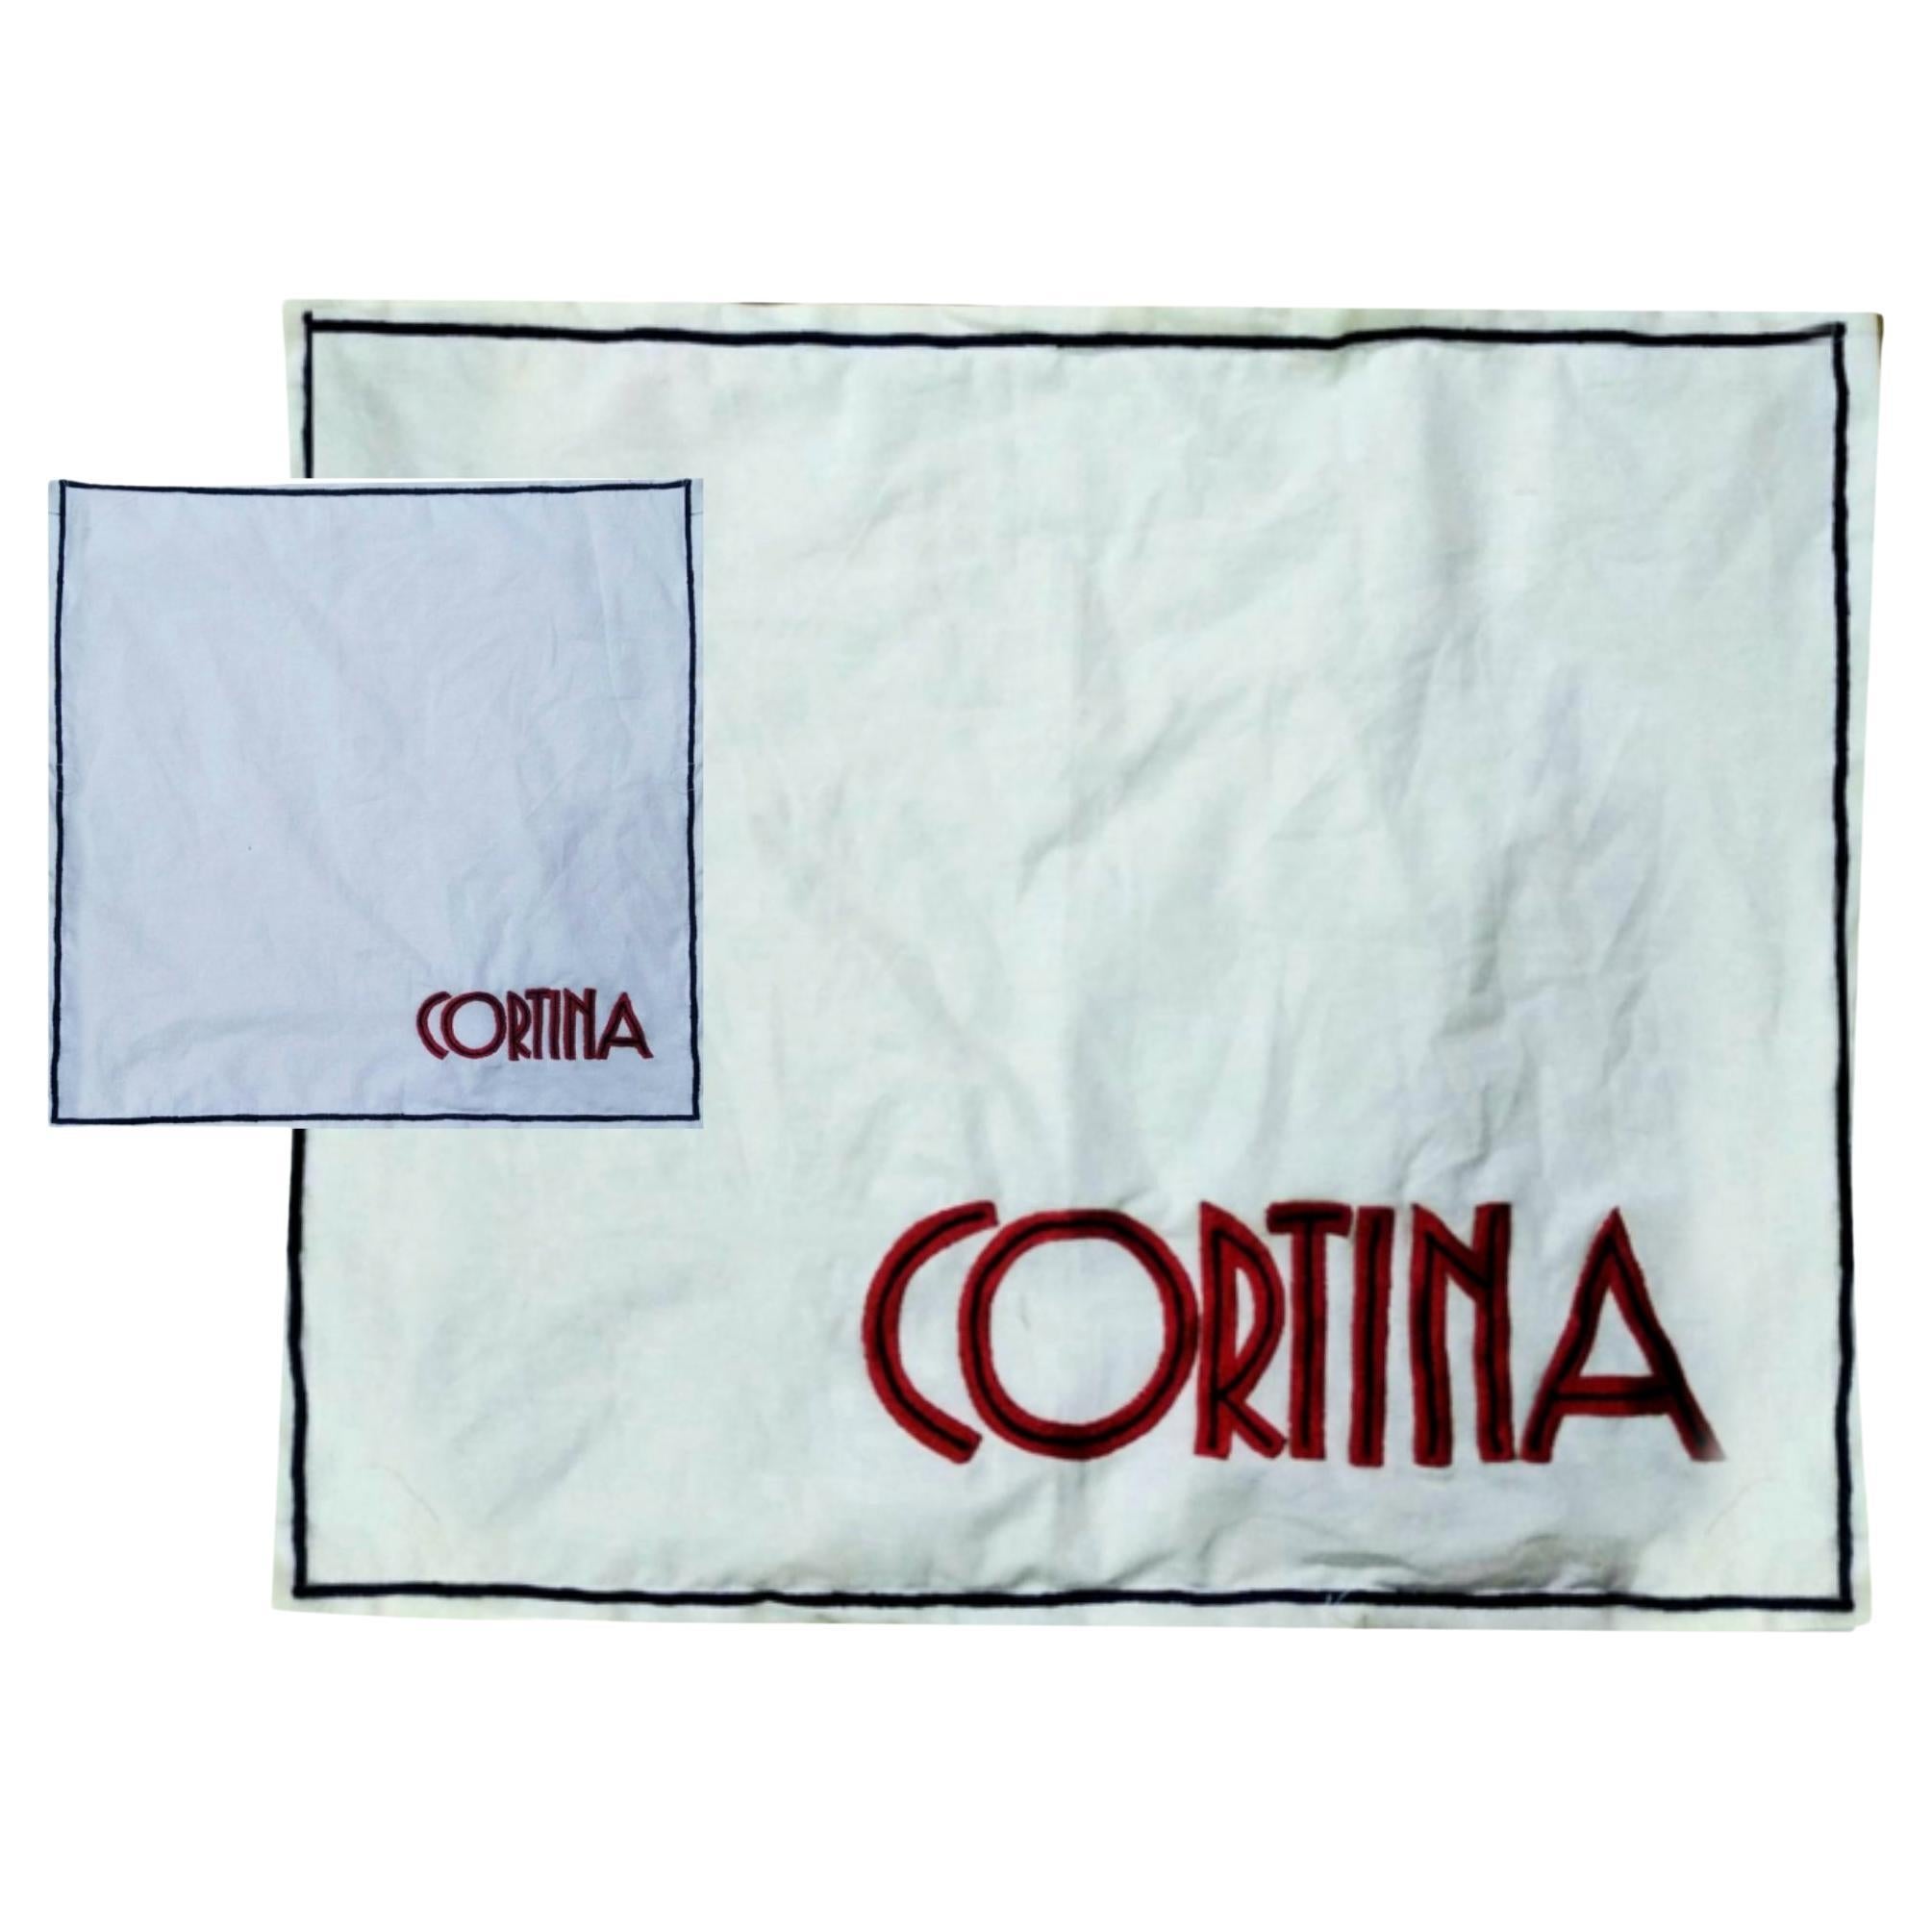 Tapis de table et serviette en coton Cortina brodés à la main